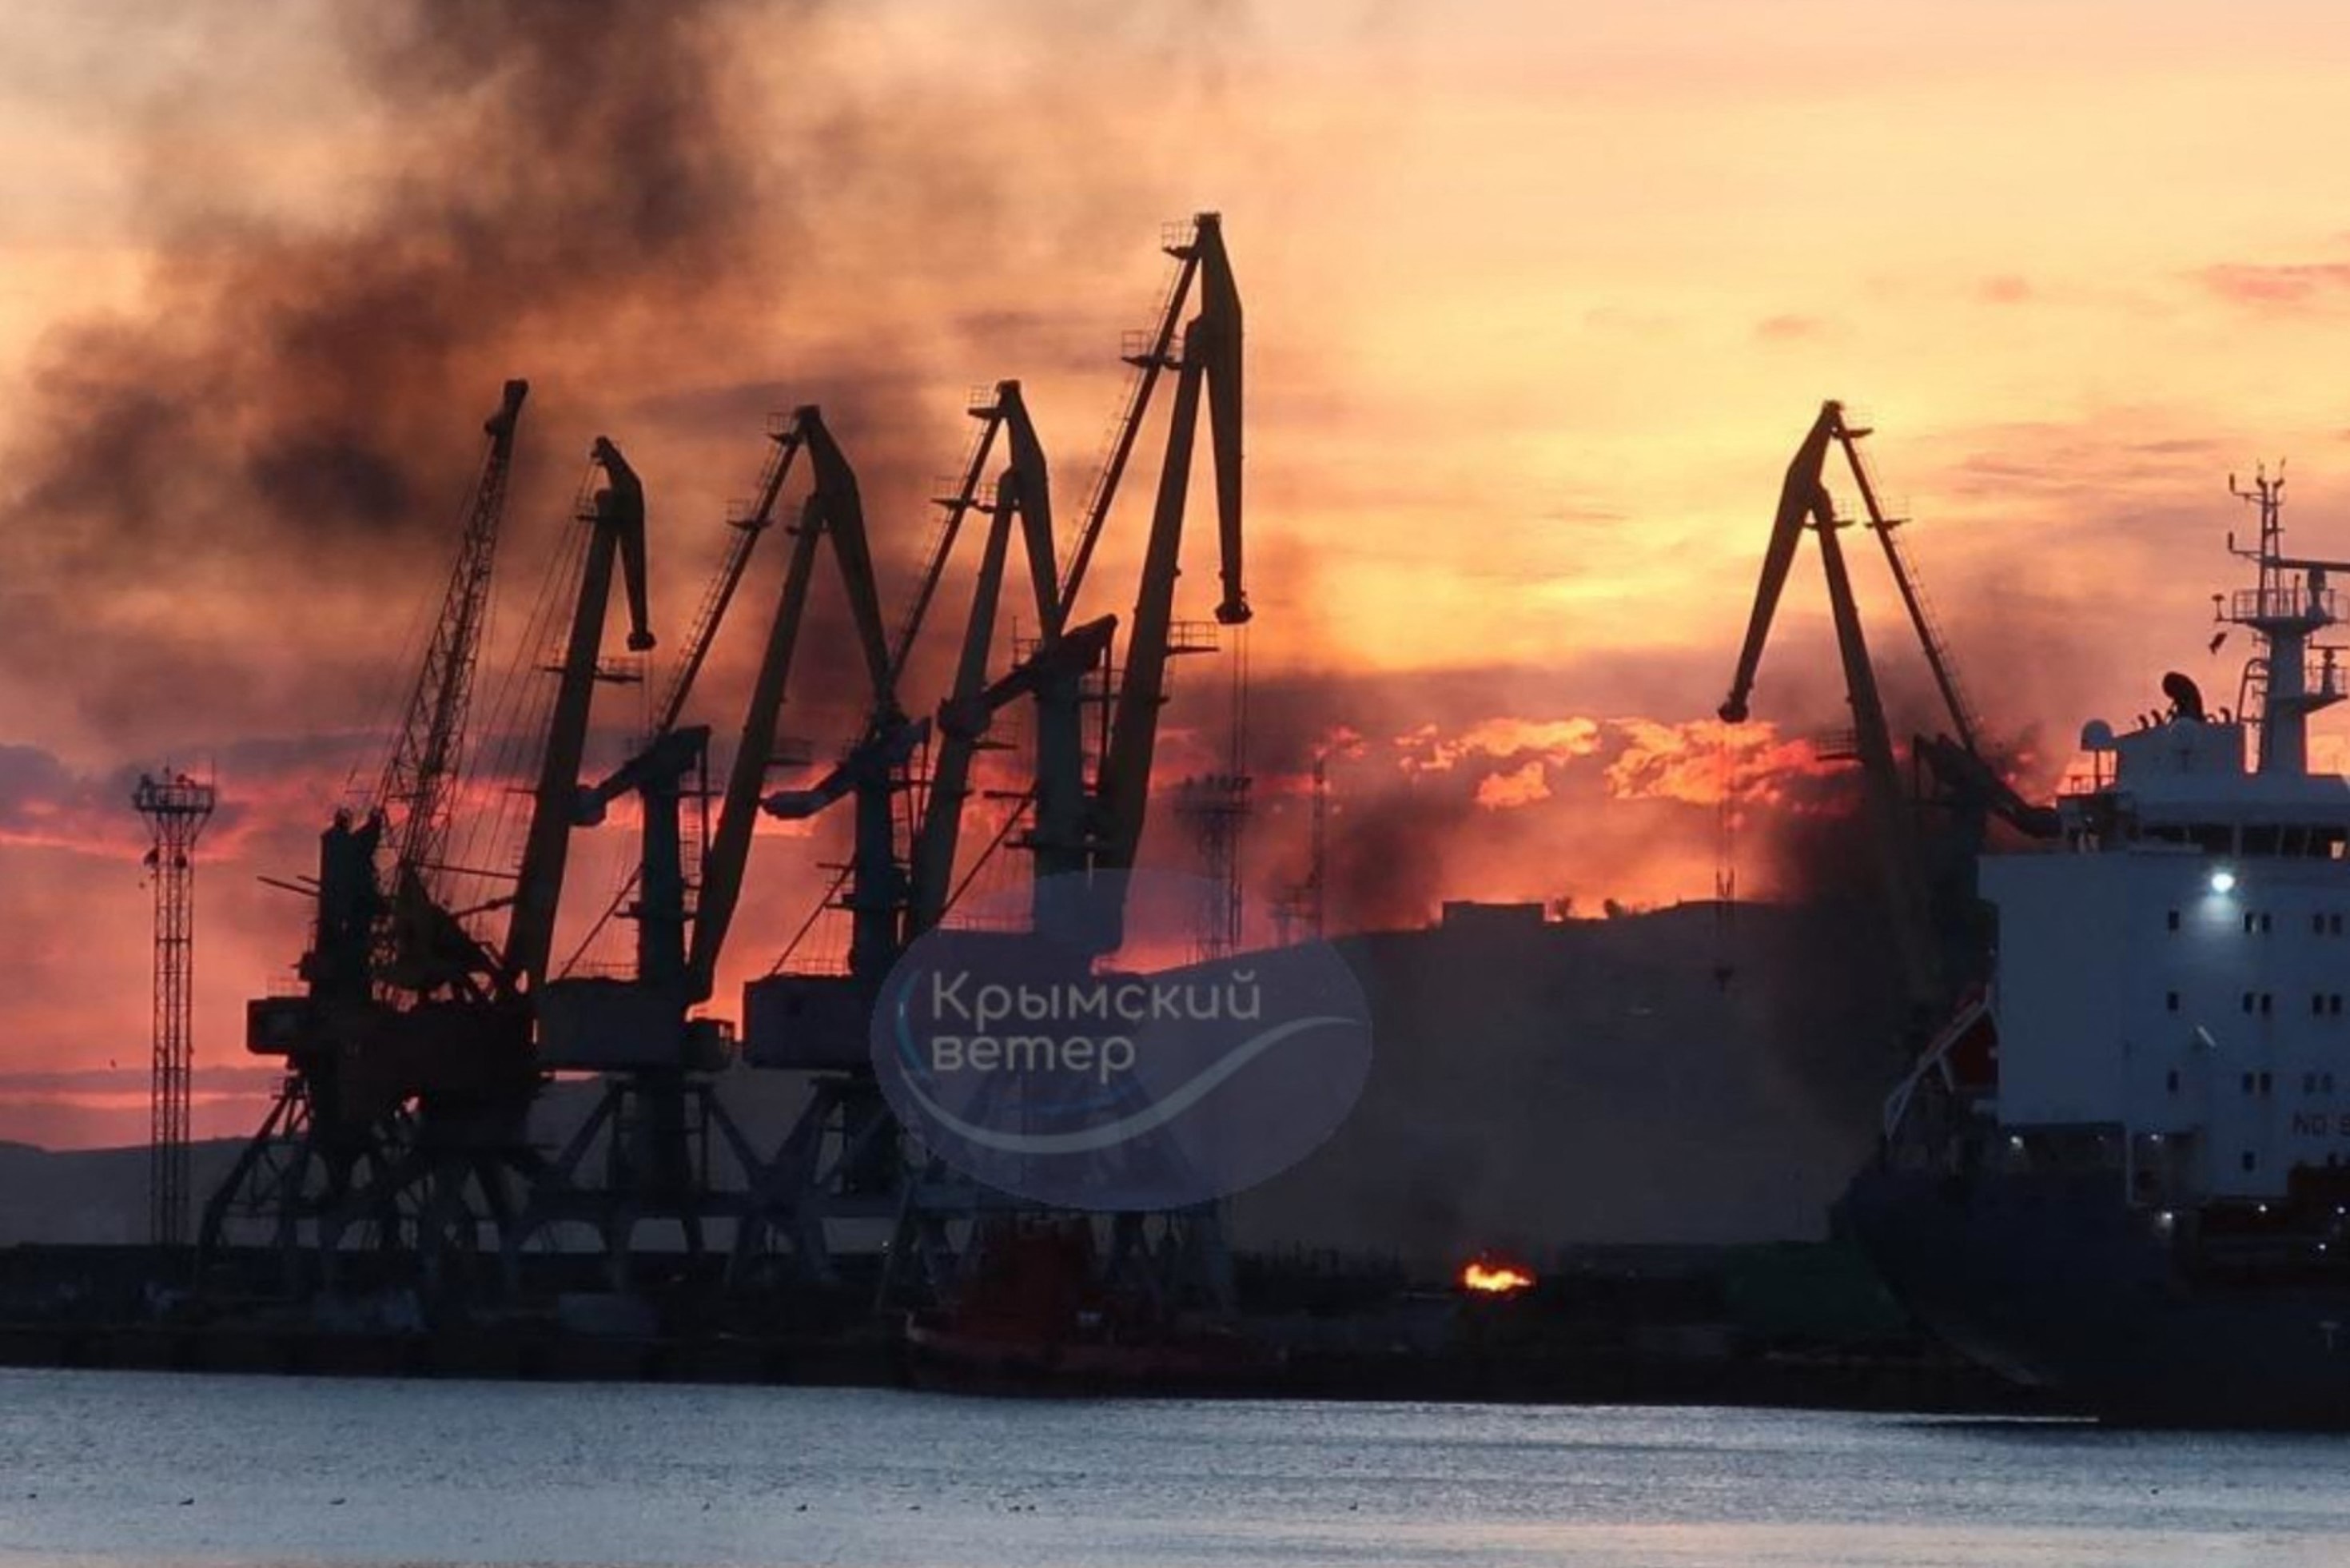 Humo que se eleva sobre un buque de guerra daado tras un ataque ucraniano en el puerto de Feodosia, Crimea controlada por Rusia.